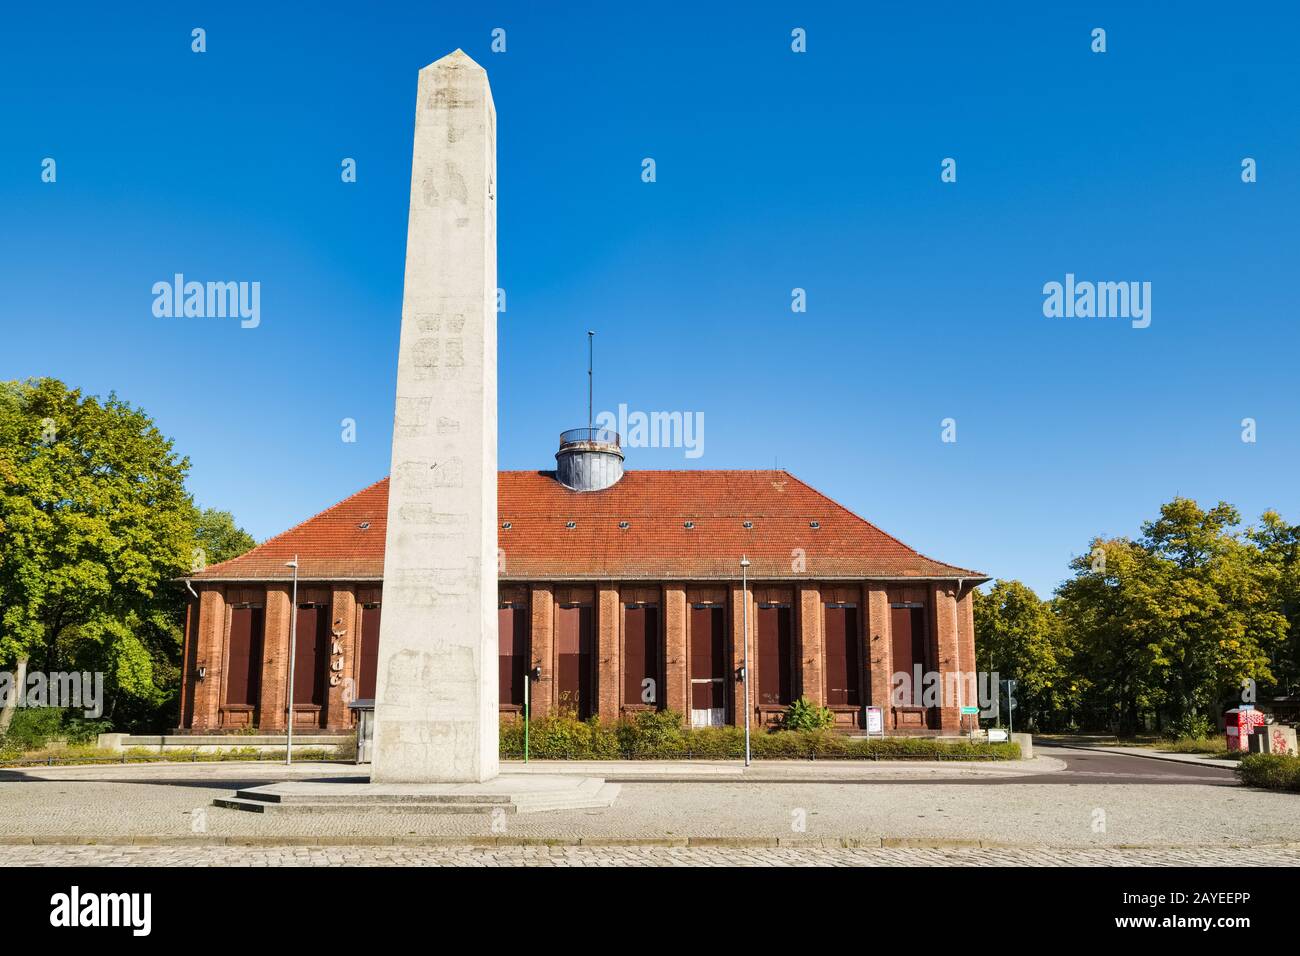 Obelisk in front of Klubhaus der Eisenbahner, Kirchmoeser, Brandenburg, Germany Stock Photo